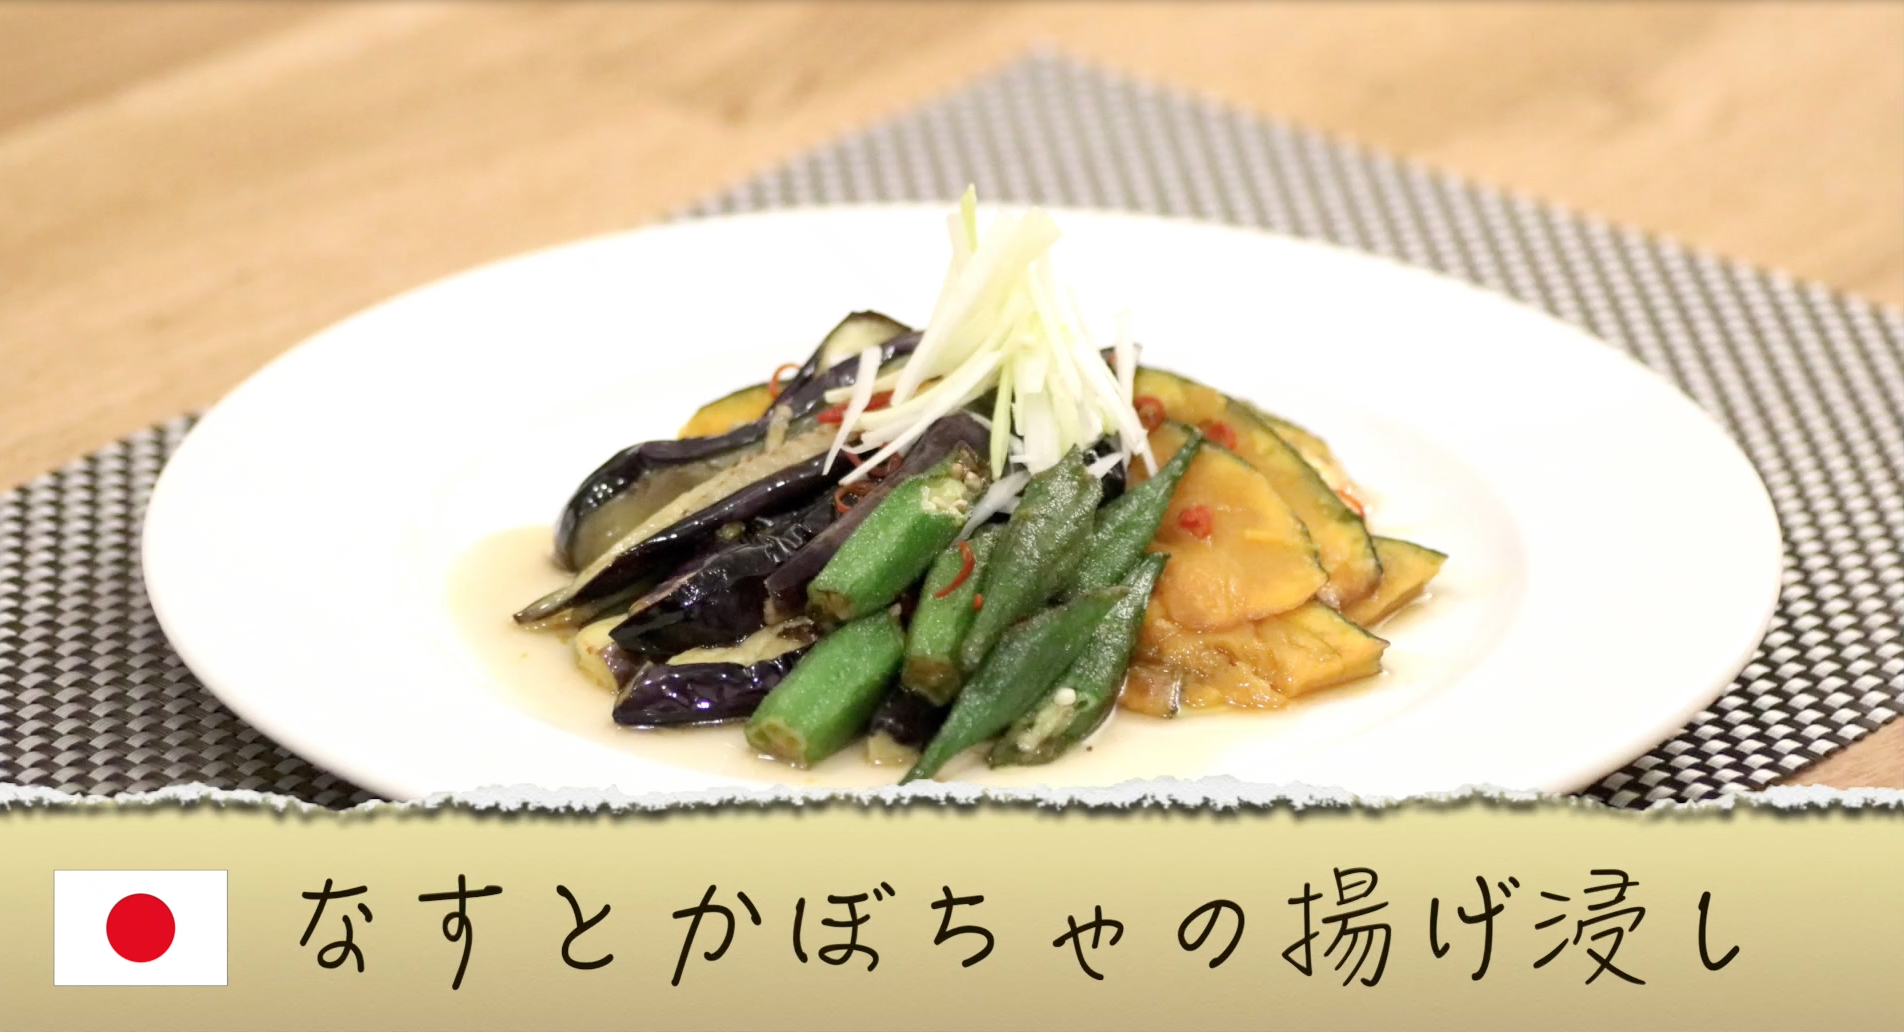 【日本の料理】なすとかぼちゃの揚げ浸しのレシピ